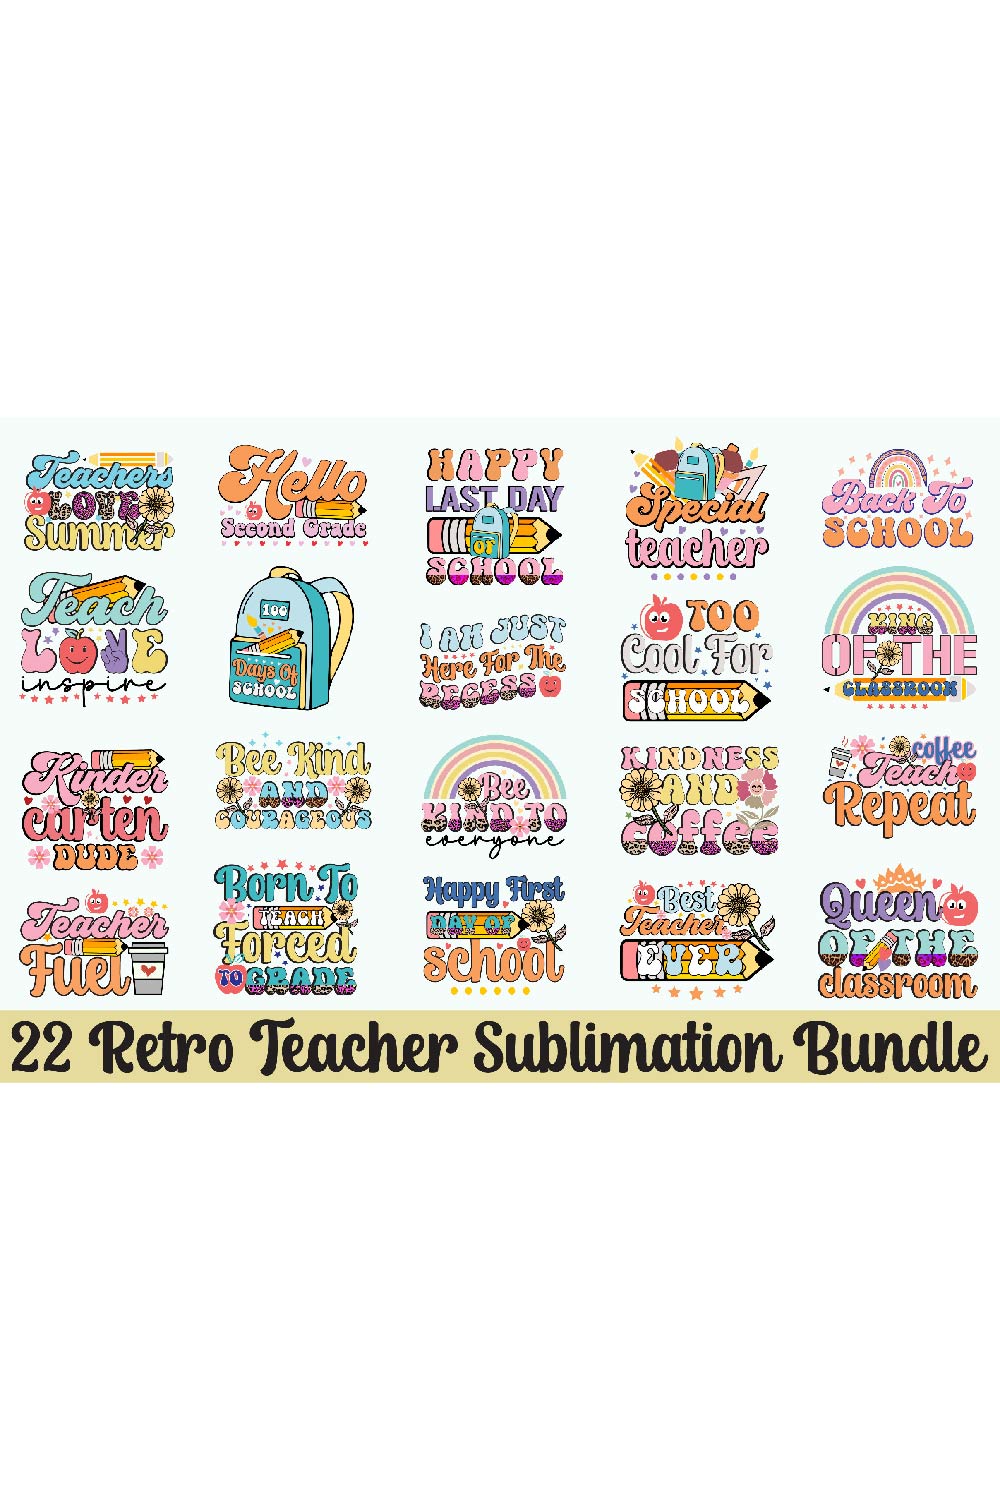 Retro Teacher Sublimation Bundle pinterest preview image.